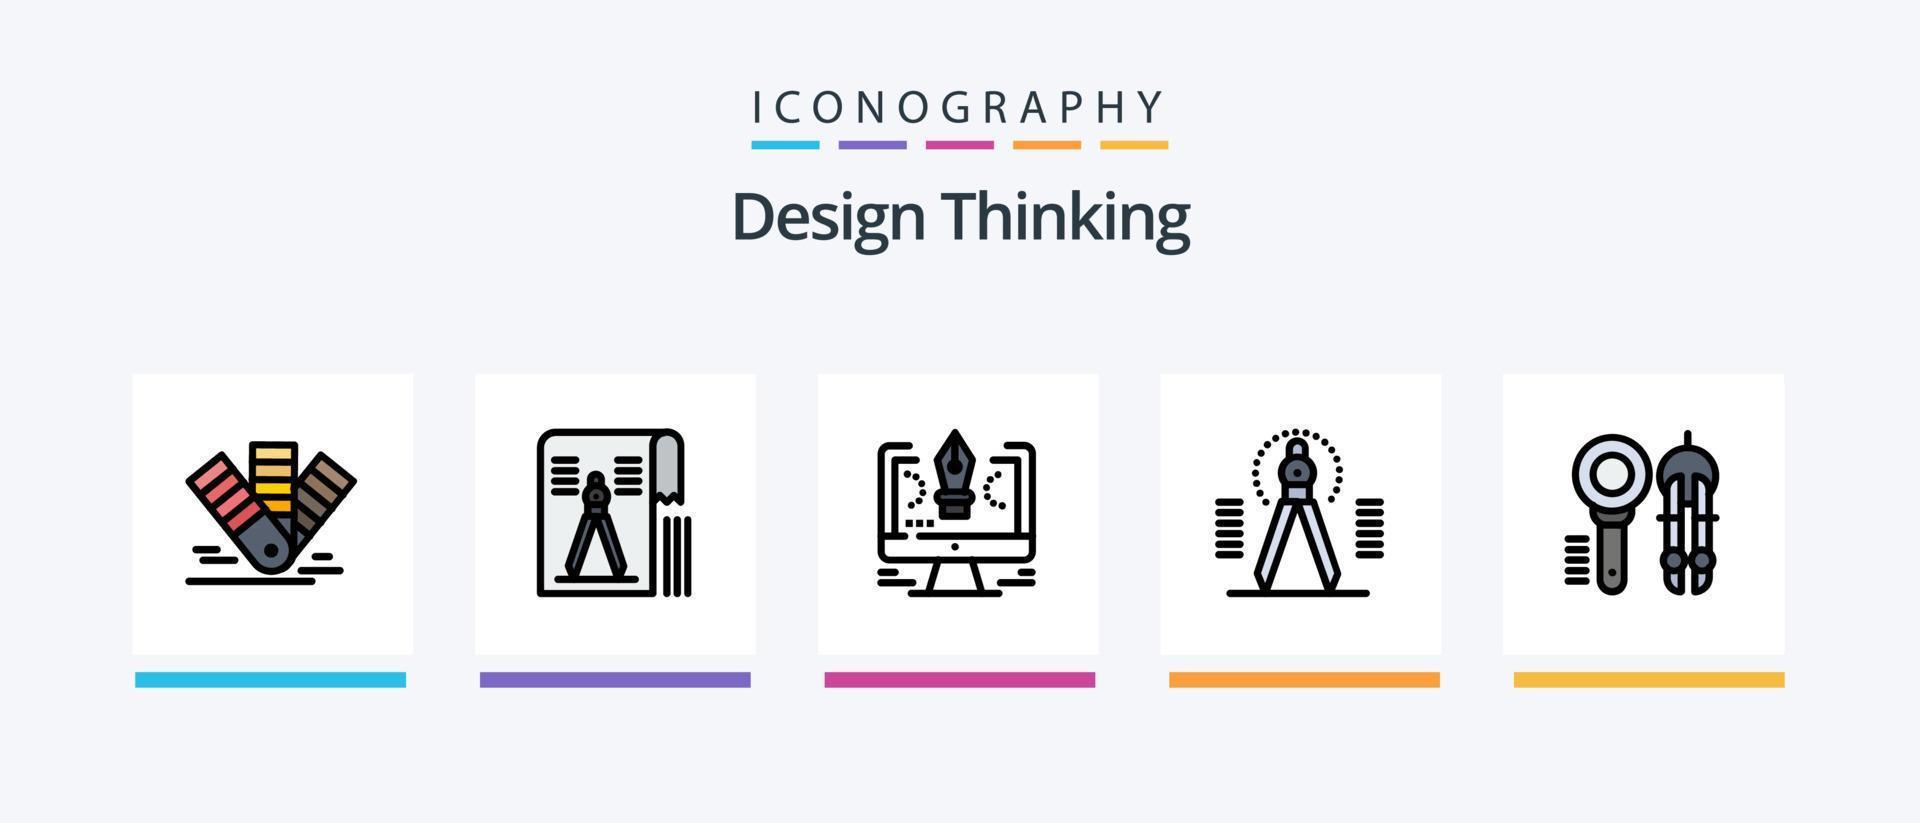 linha de pensamento de design cheia de 5 ícones incluindo ferramenta. bússola. pms. luz. editar. design de ícones criativos vetor